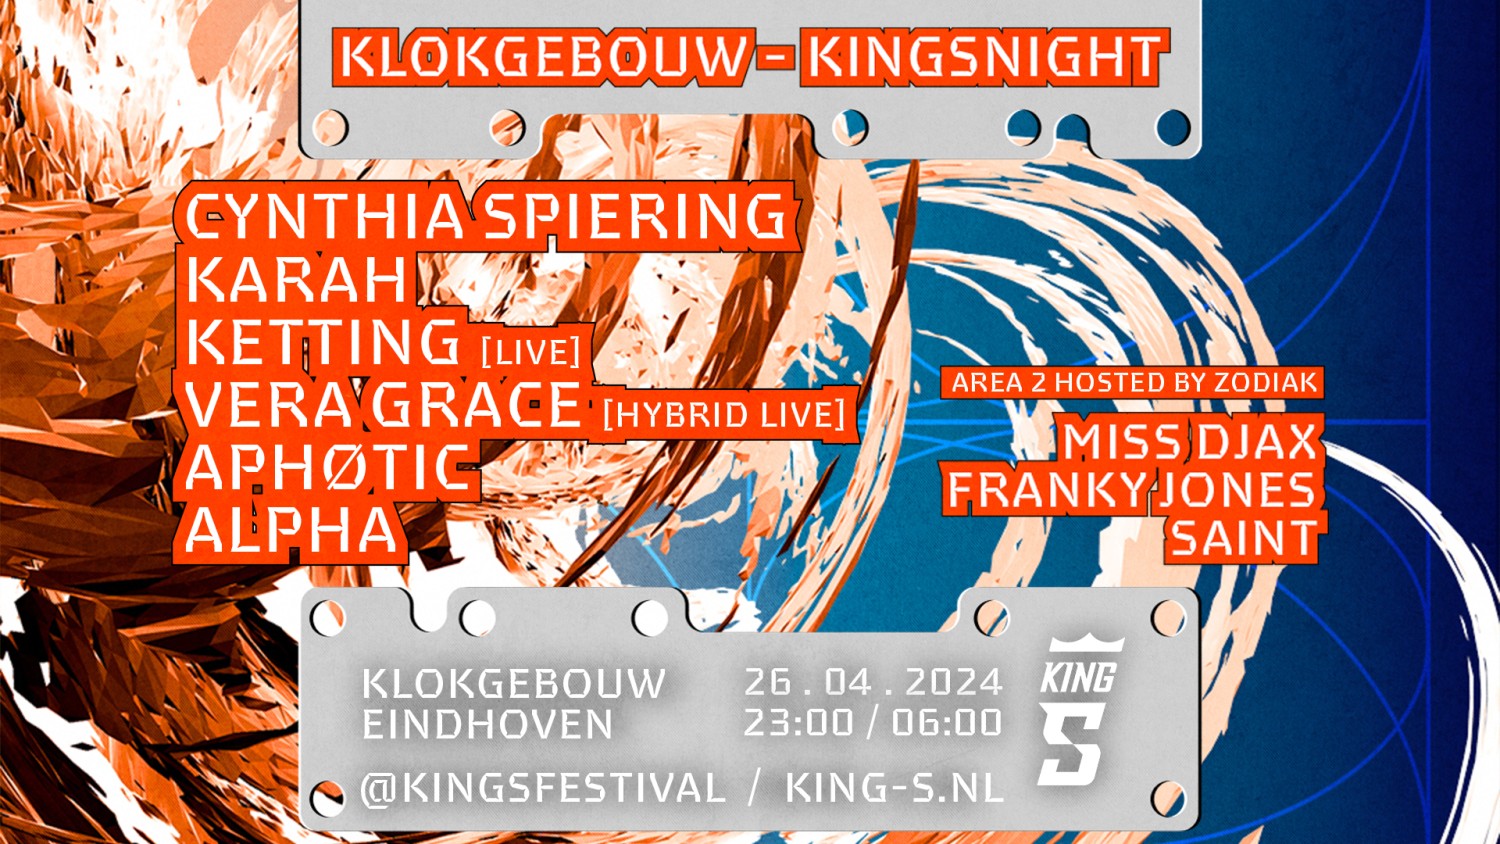 King-S Festival x Kingsnight Rave